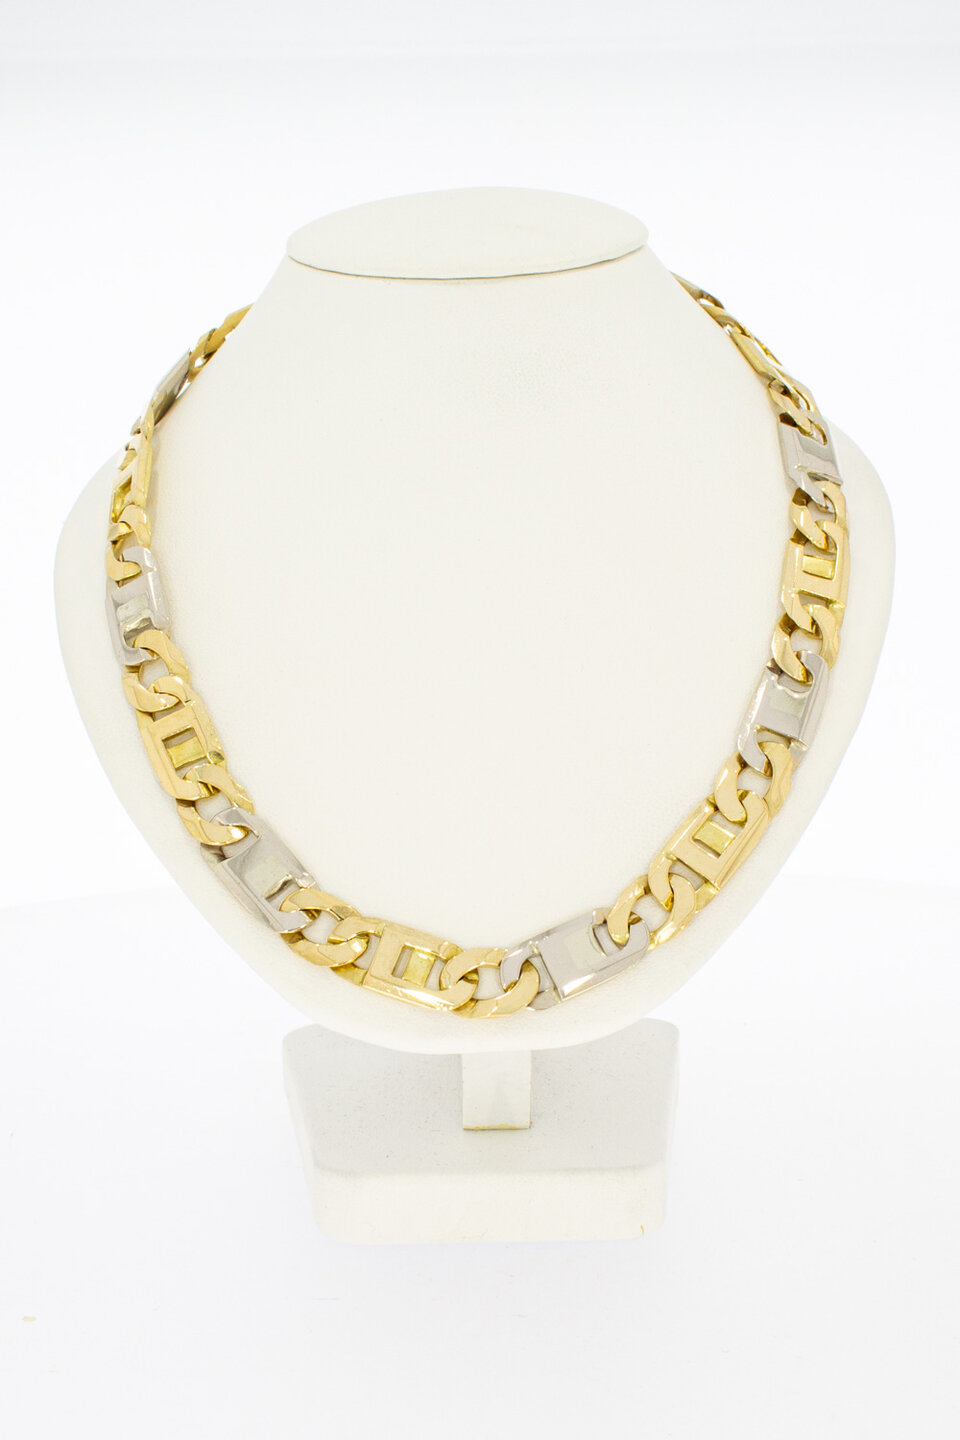 Rolex Halskette 18 Karat Gold – 75,8 cm